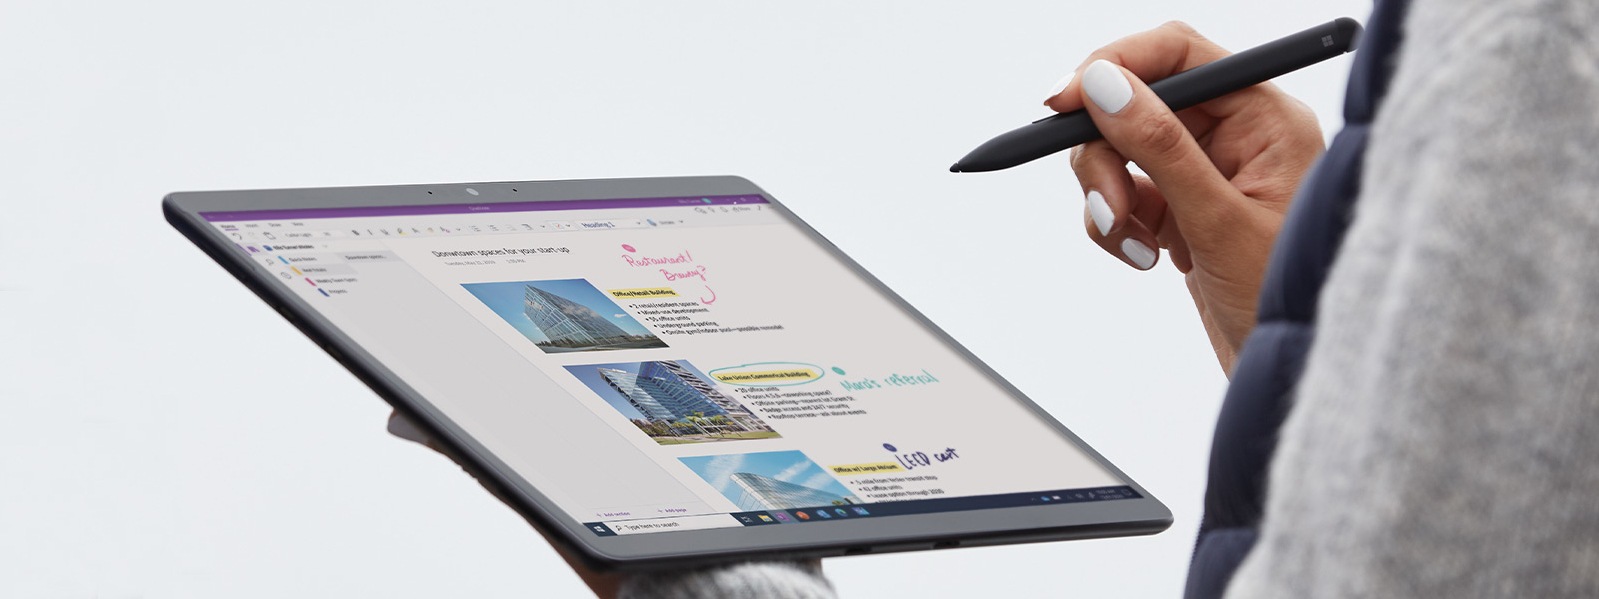 Eine Person hält einen Surface Pro X in einer Hand und Surface Slim Pen in der anderen